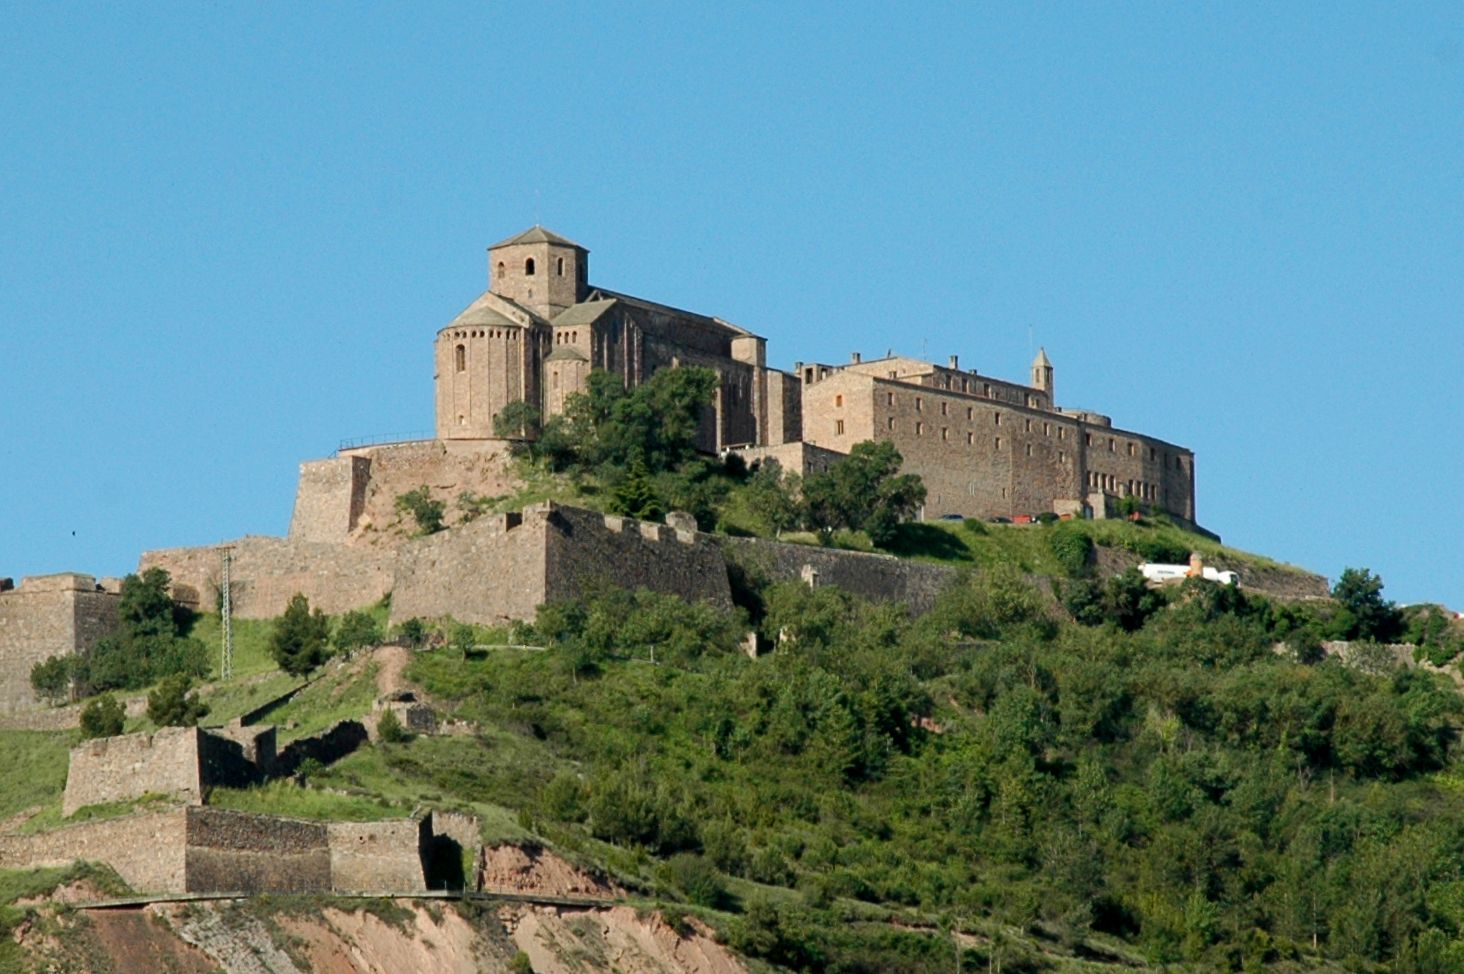 The castle of Cardona